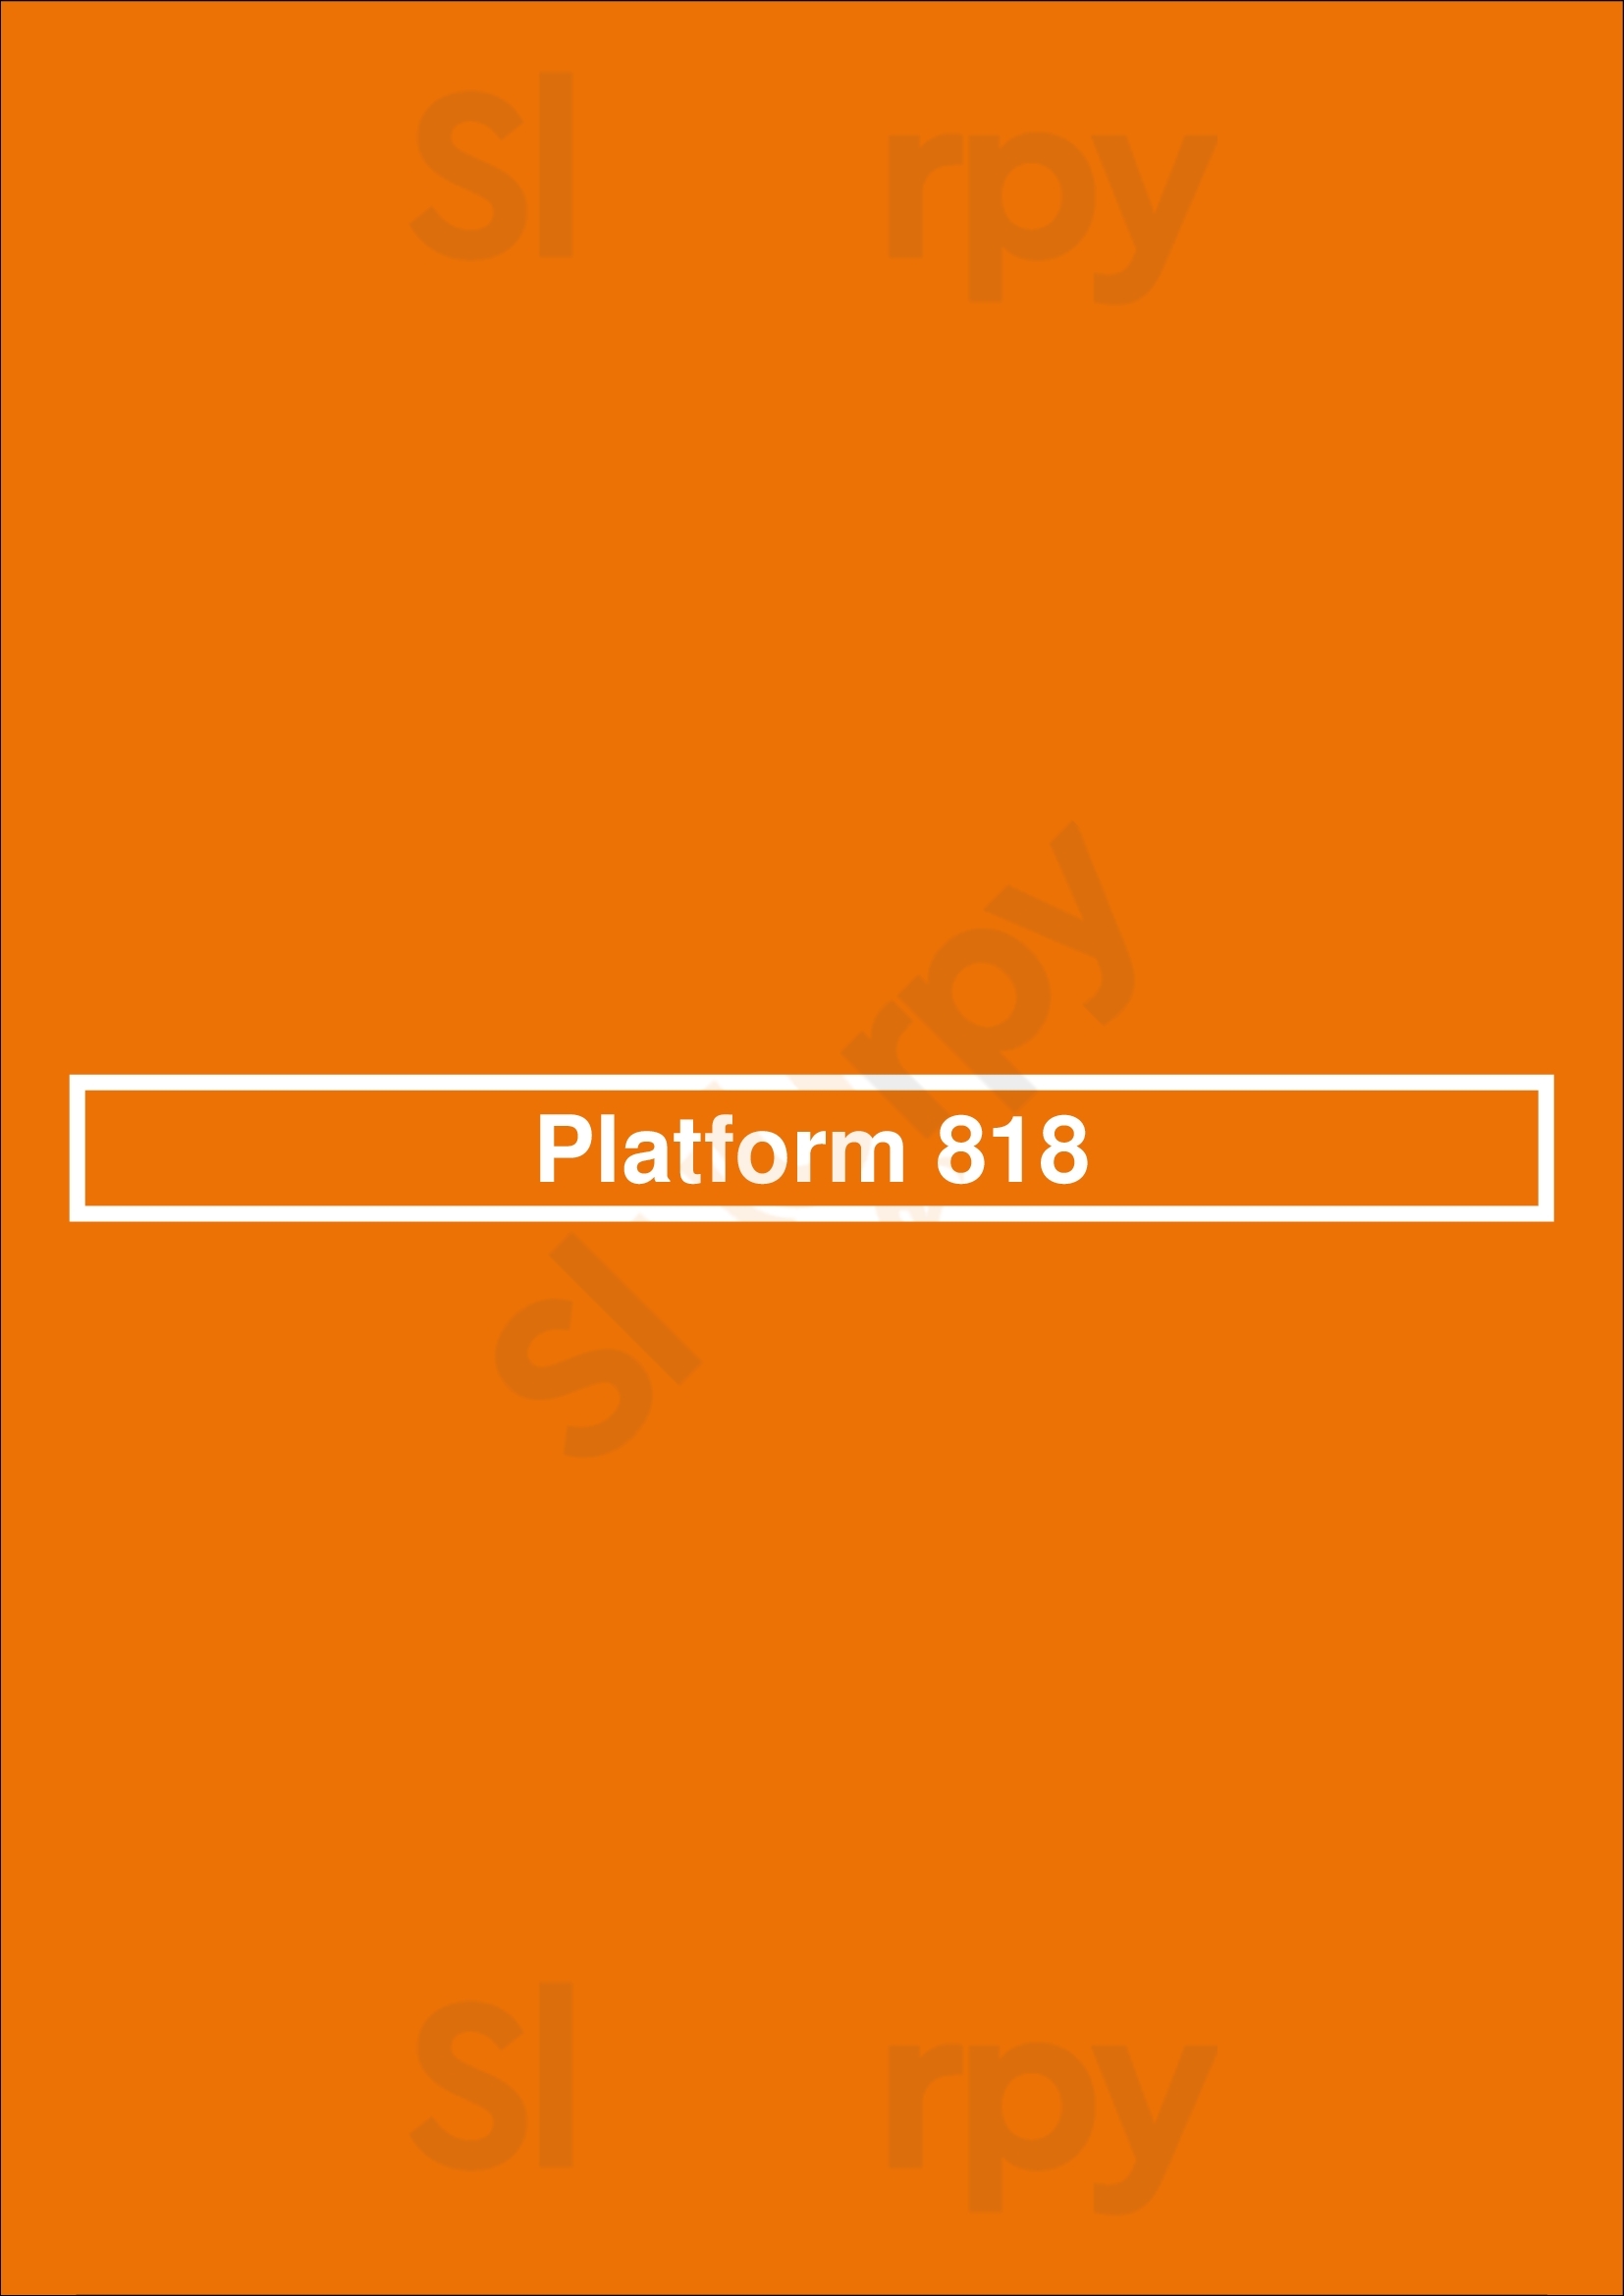 Platform 818 Sydney Menu - 1